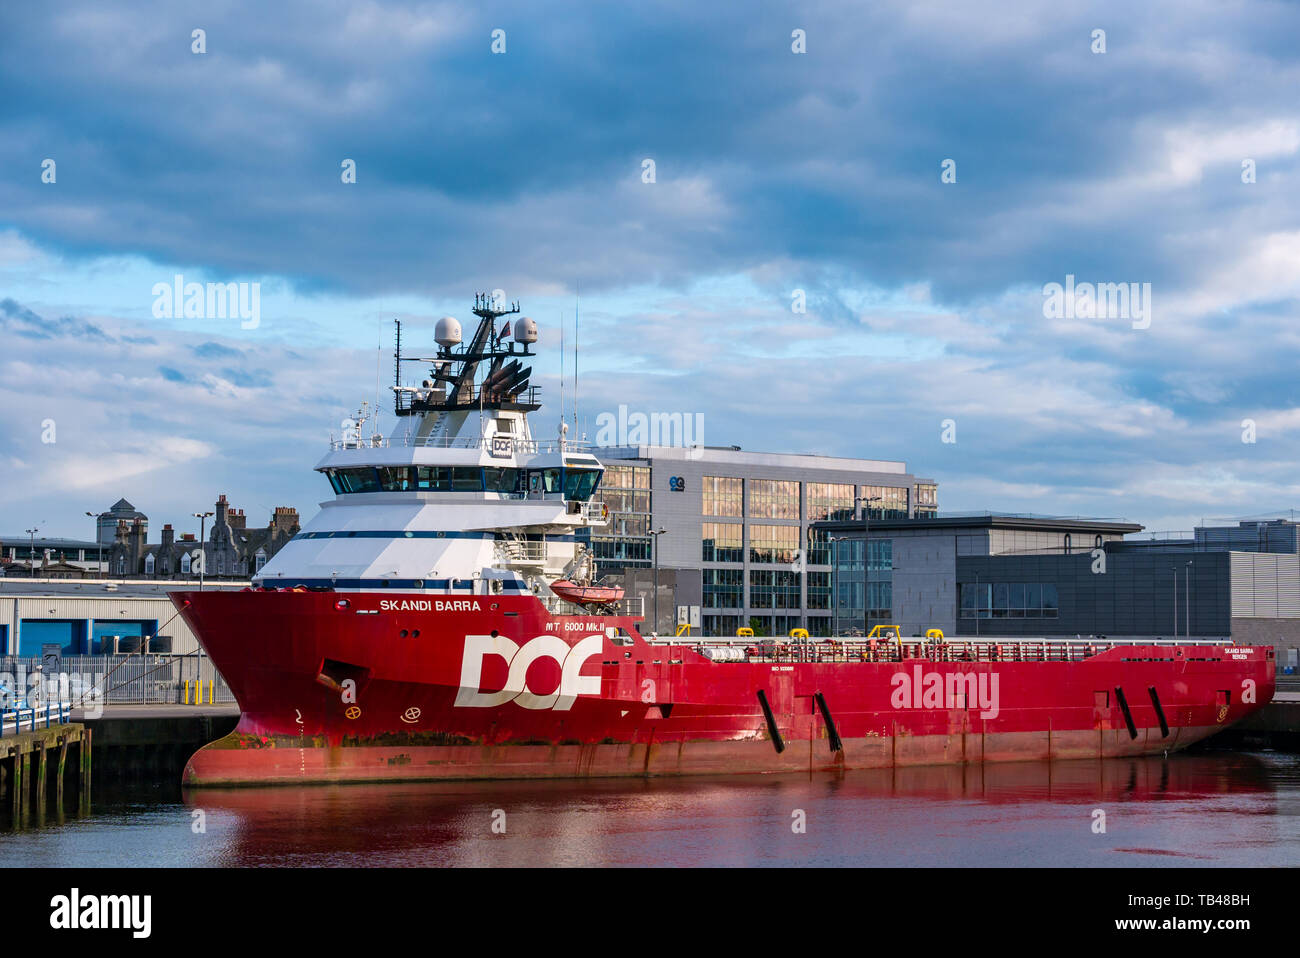 Norvegese flotta DOF Skandi Barra piattaforma e alimentazione offshore nave ormeggiata nel porto di Aberdeen, Aberdeen Scotland, Regno Unito Foto Stock